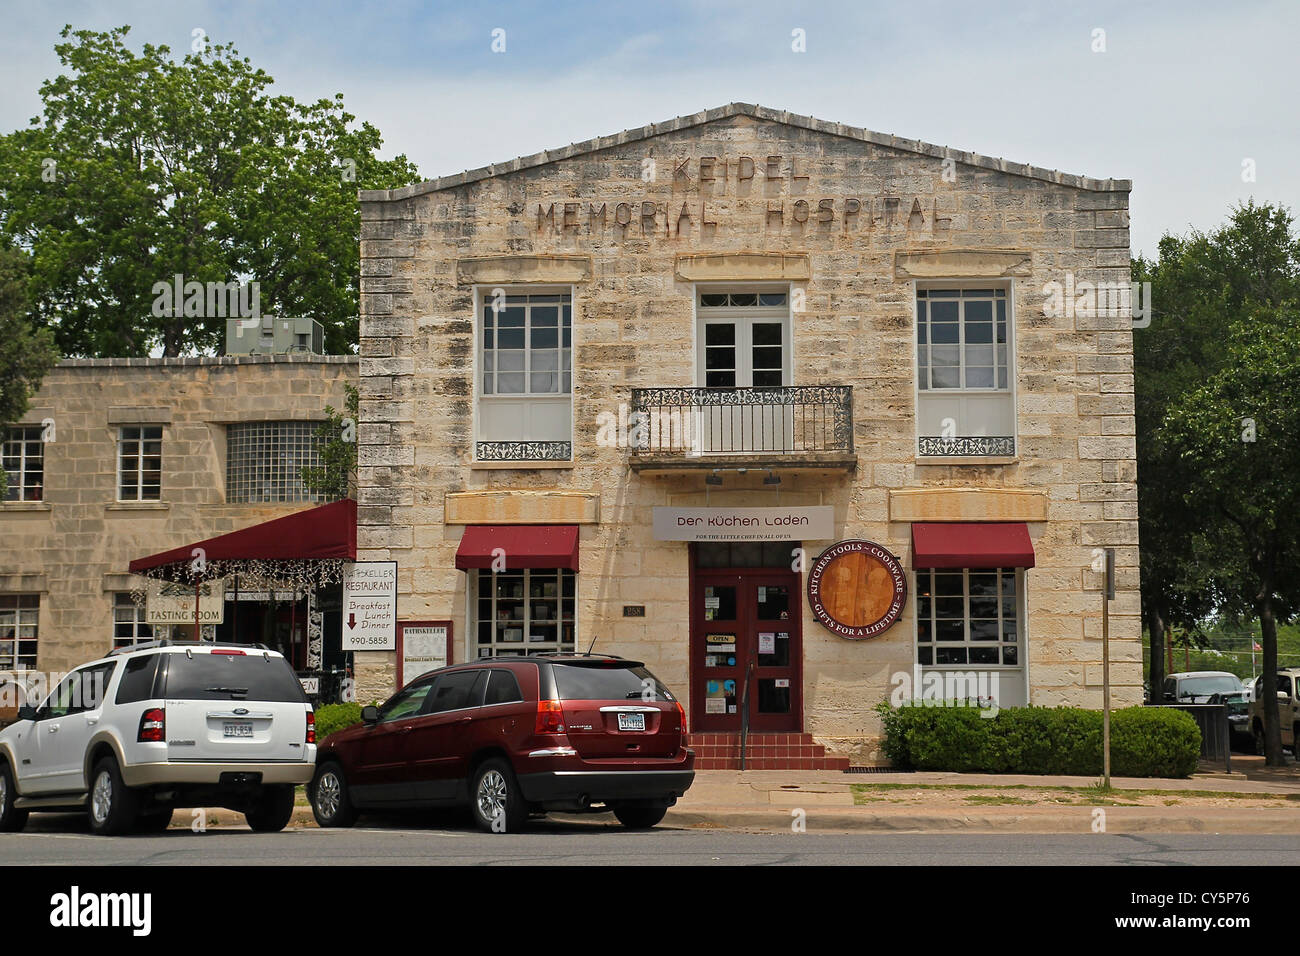 Edificio di pietra calcarea che una volta ha tenuto un ospedale e ora ospita negozi di culinaria in Fredericksburg, Texas Foto Stock